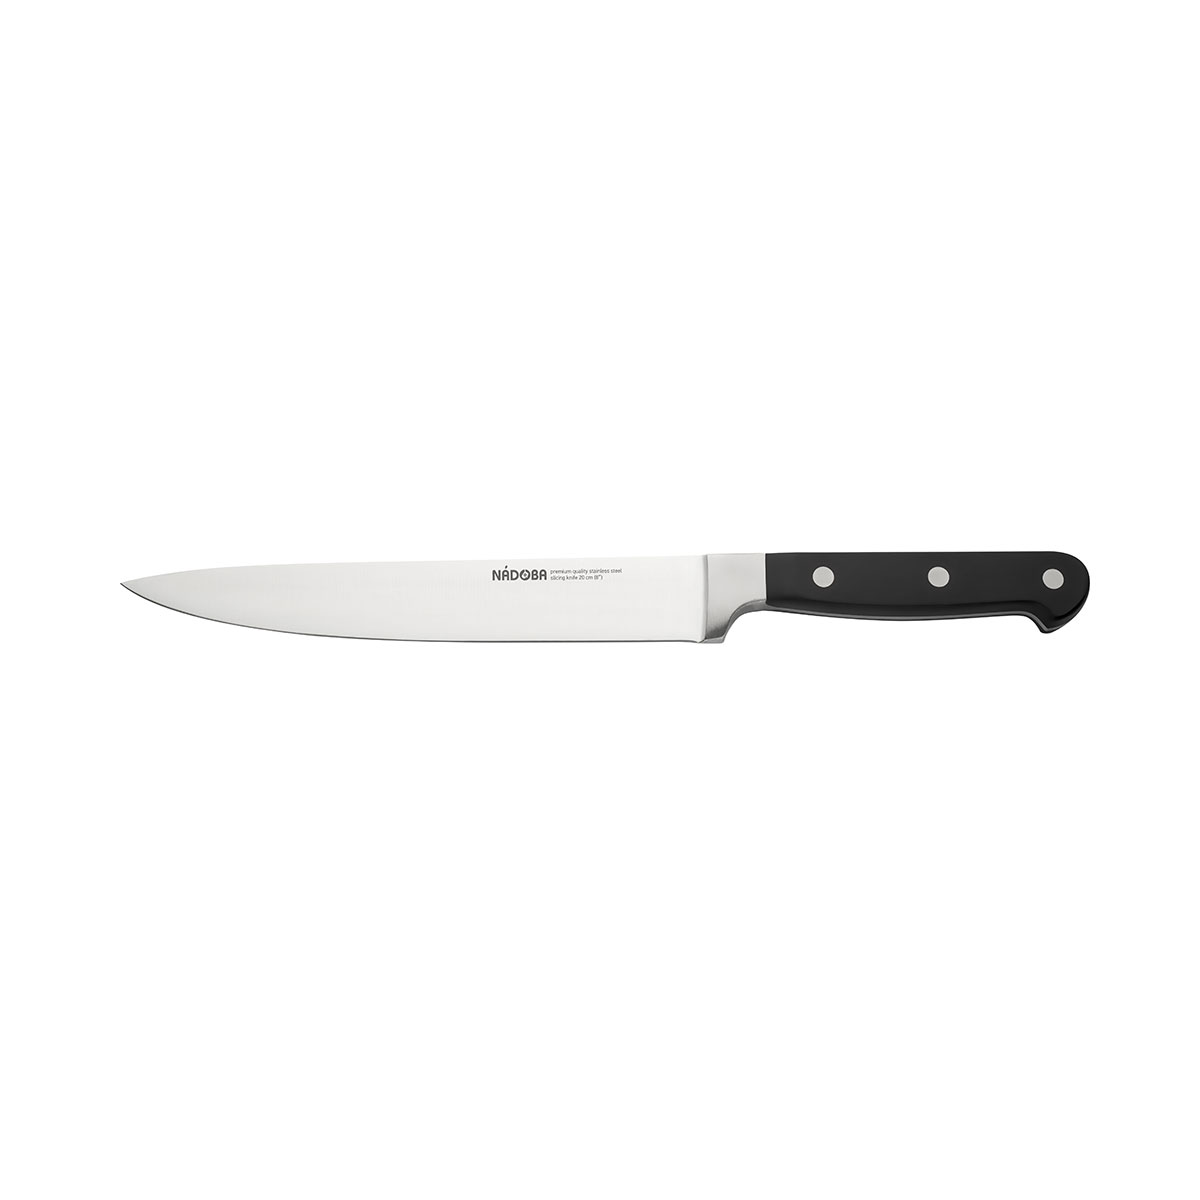 Нож Nadoba разделочный 724212, 20 см нож разделочный 20 см nadoba helga